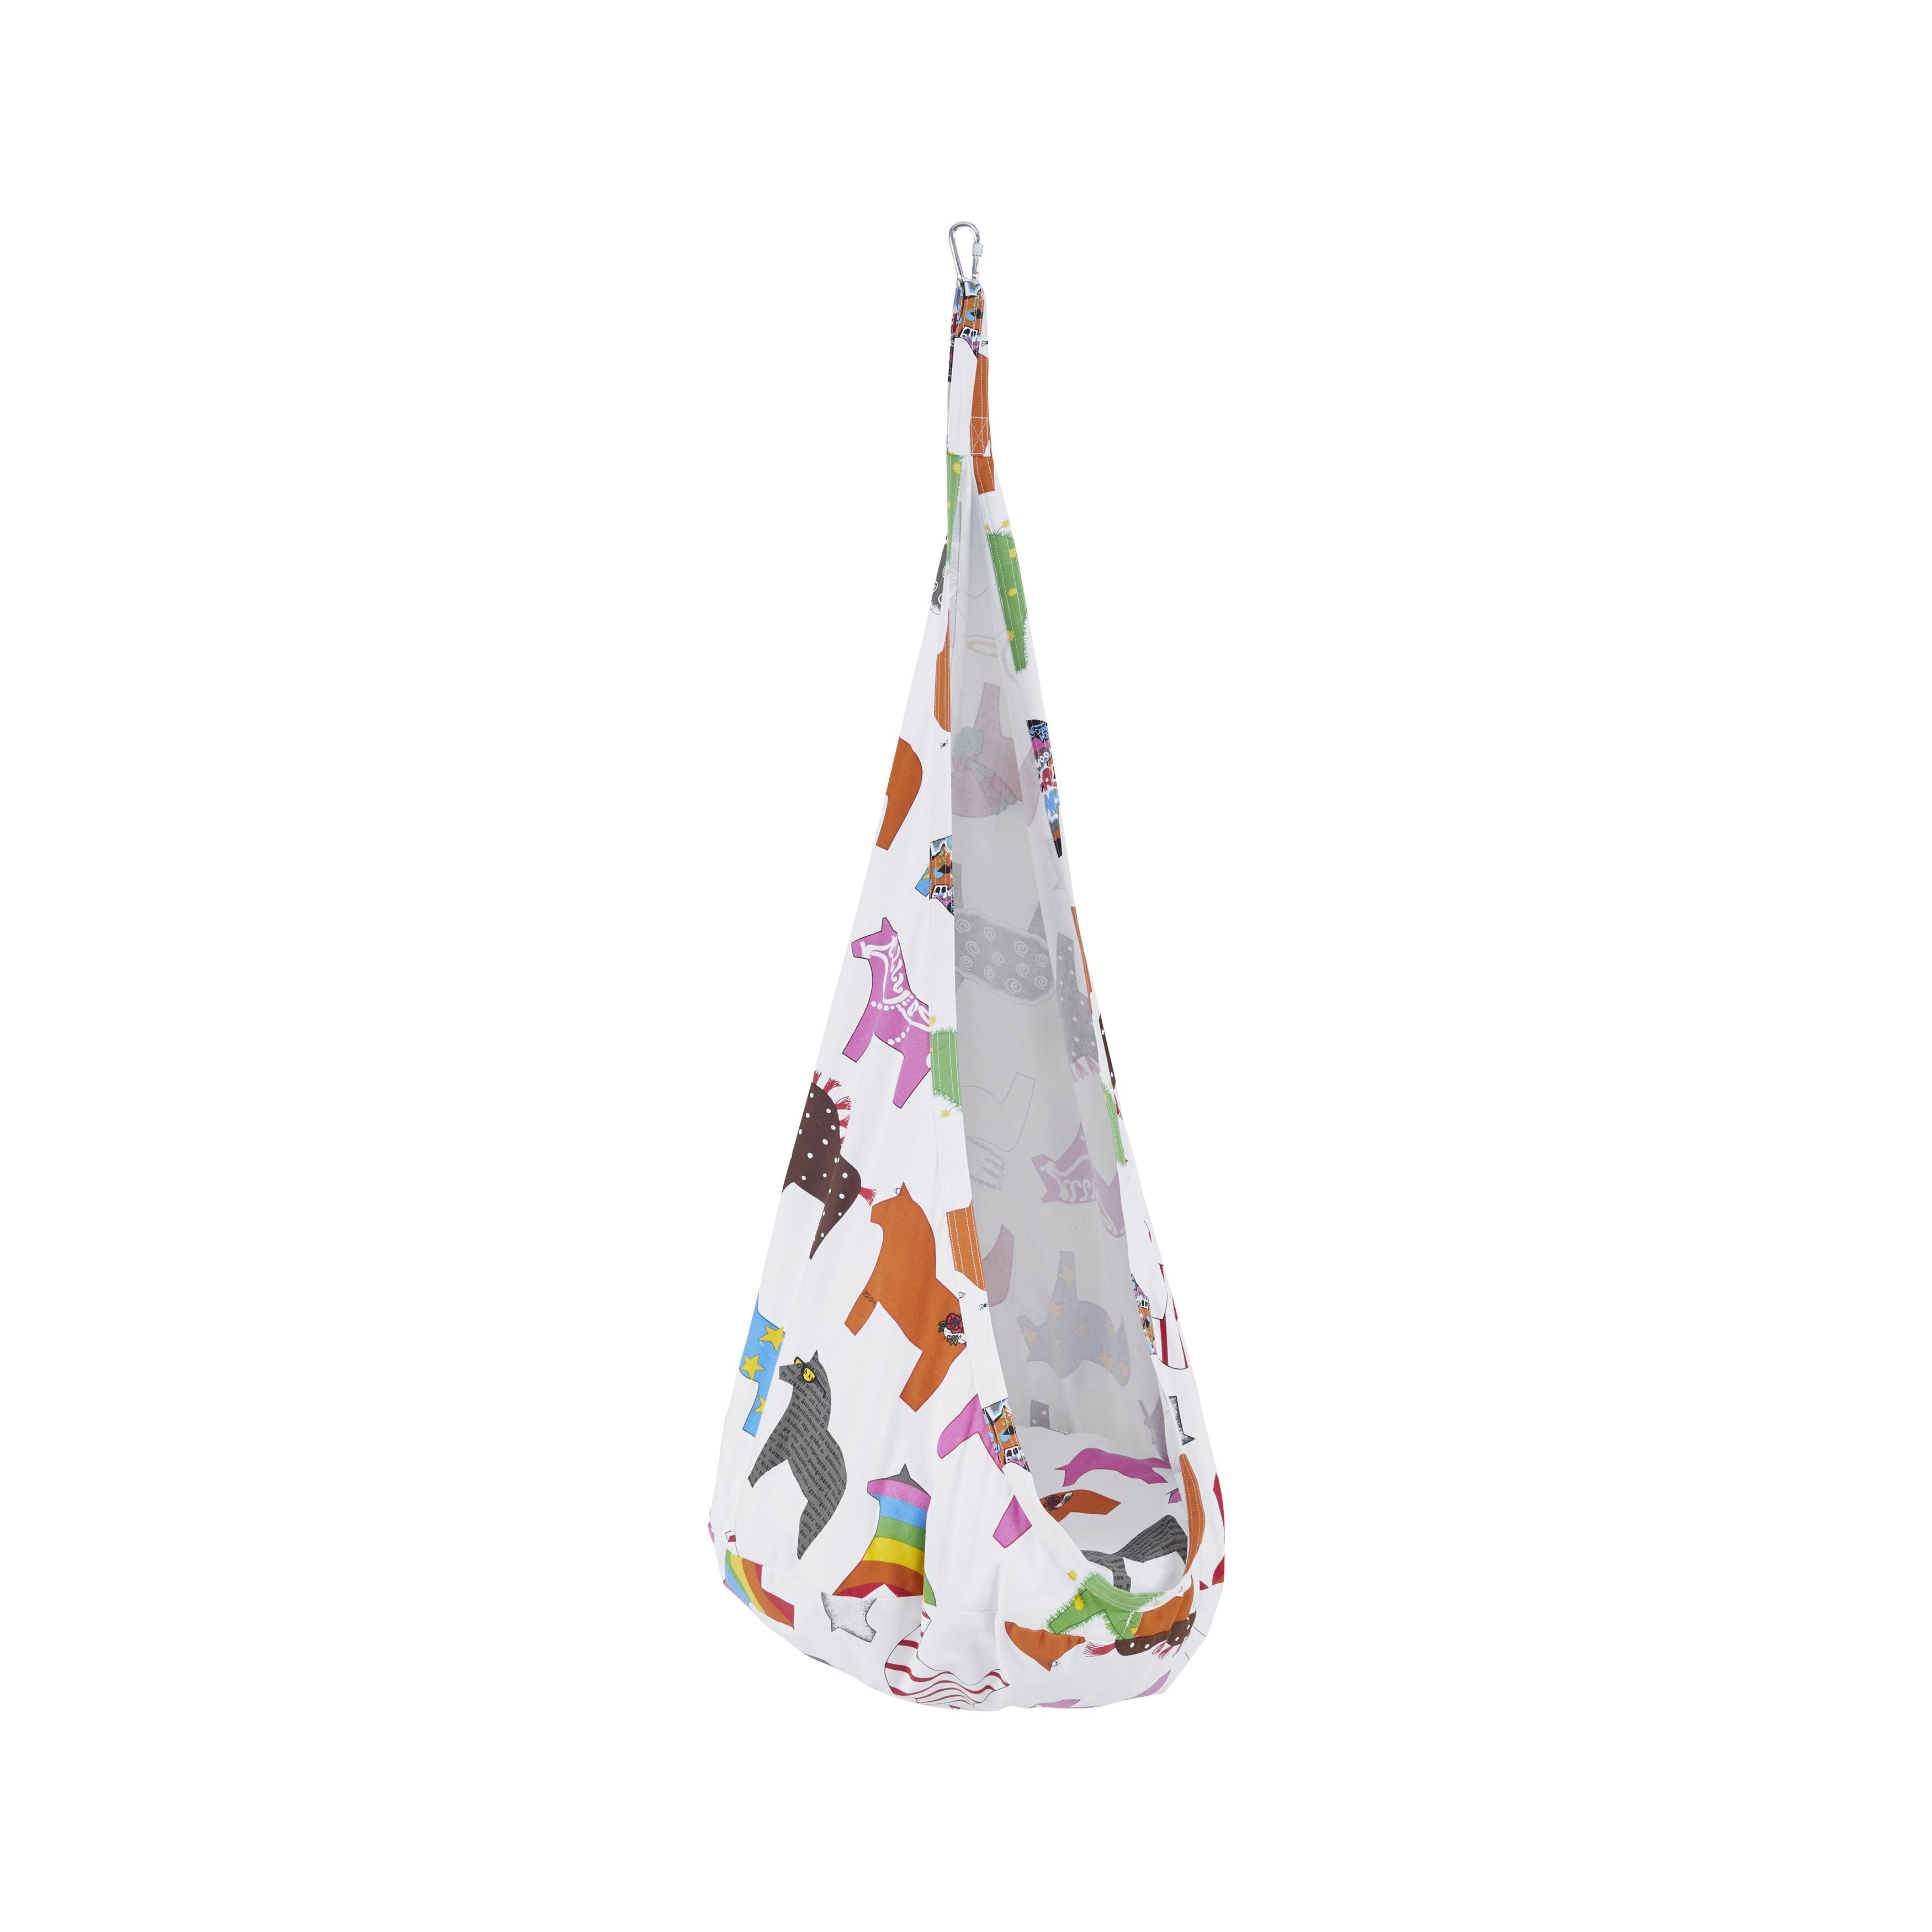 Hängehöhle Pooh Multicolor inkl. Kissen - Multicolor/Weiß, MODERN, Textil (70/150/70cm) - Bessagi Kids